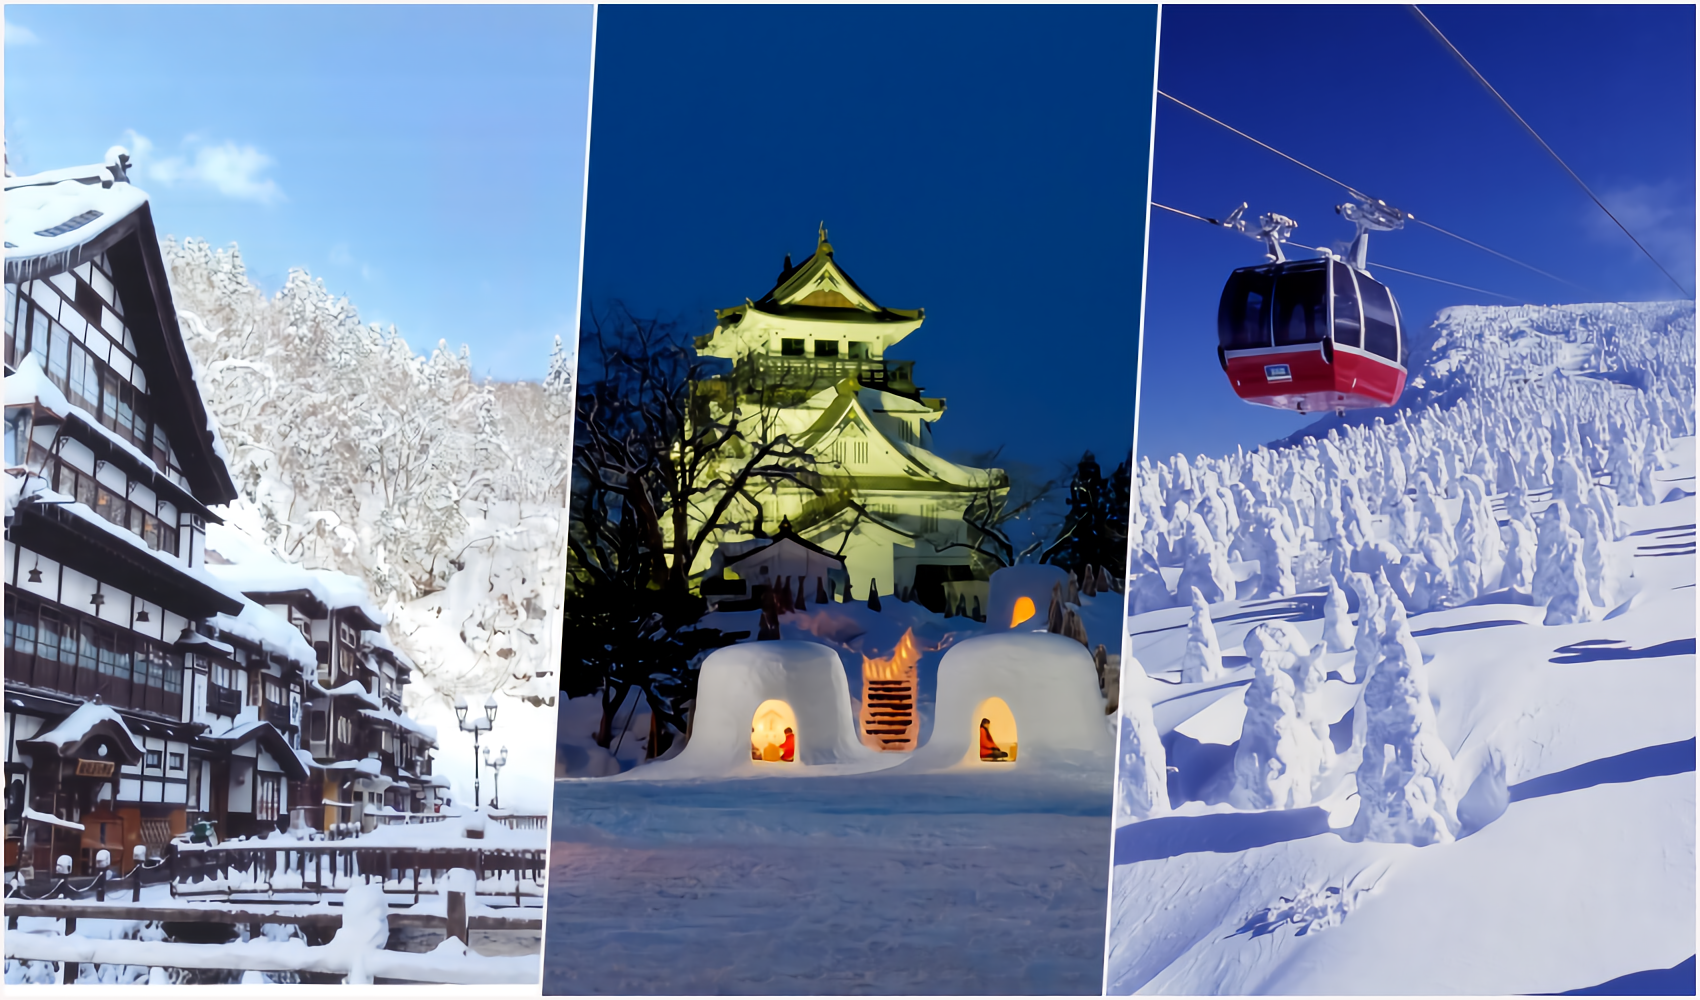 Cùng đi du lịch qua những bức ảnh! 4 địa điểm ngắm tuyết đẹp nhất ...